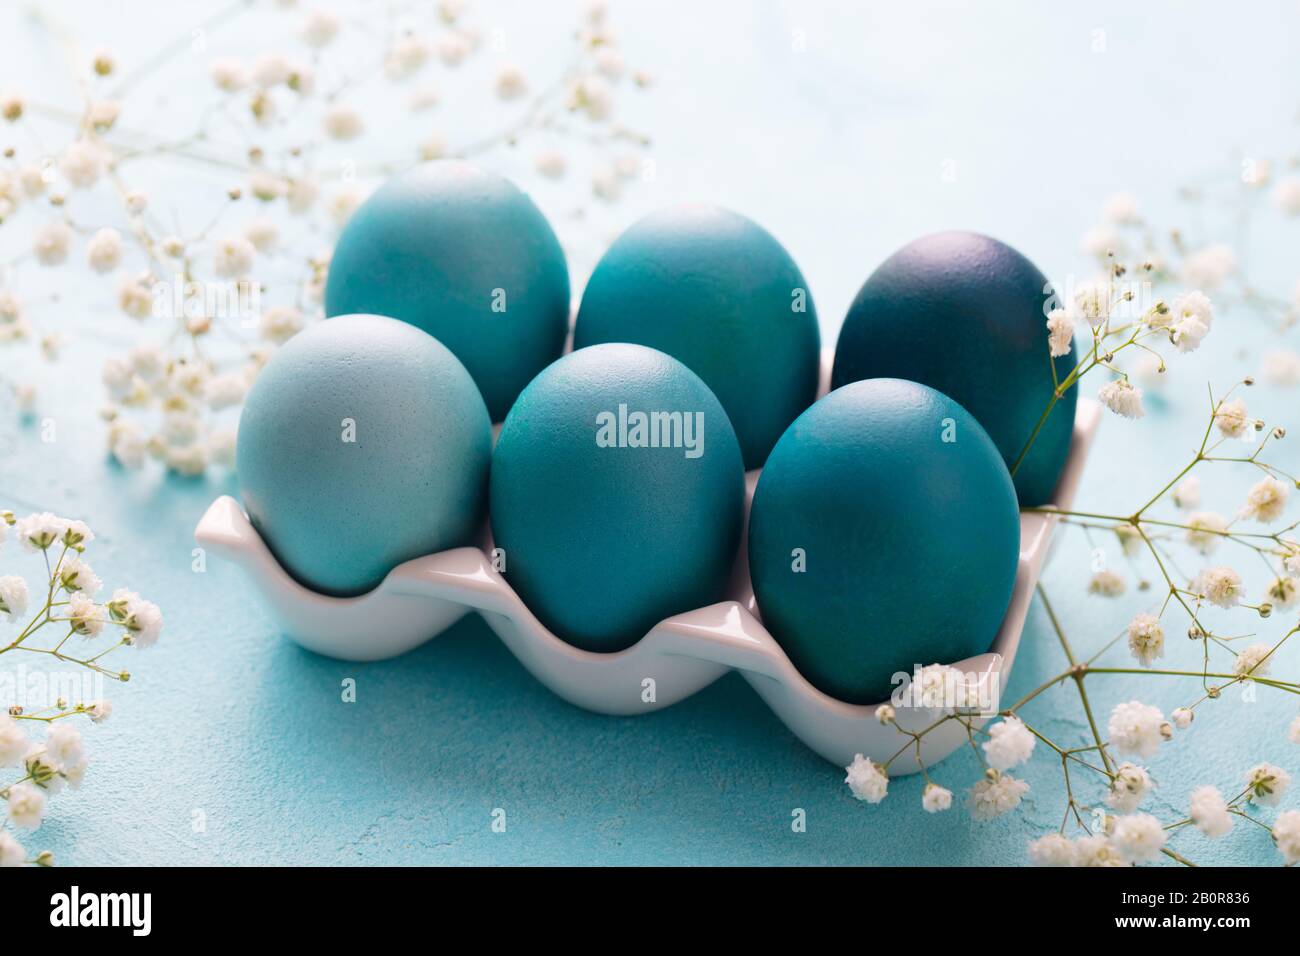 Bunte Ostereier in einem Eikasten aus Porzellan mit weißen Blumen auf blauem Grund. Nahaufnahme. Stockfoto